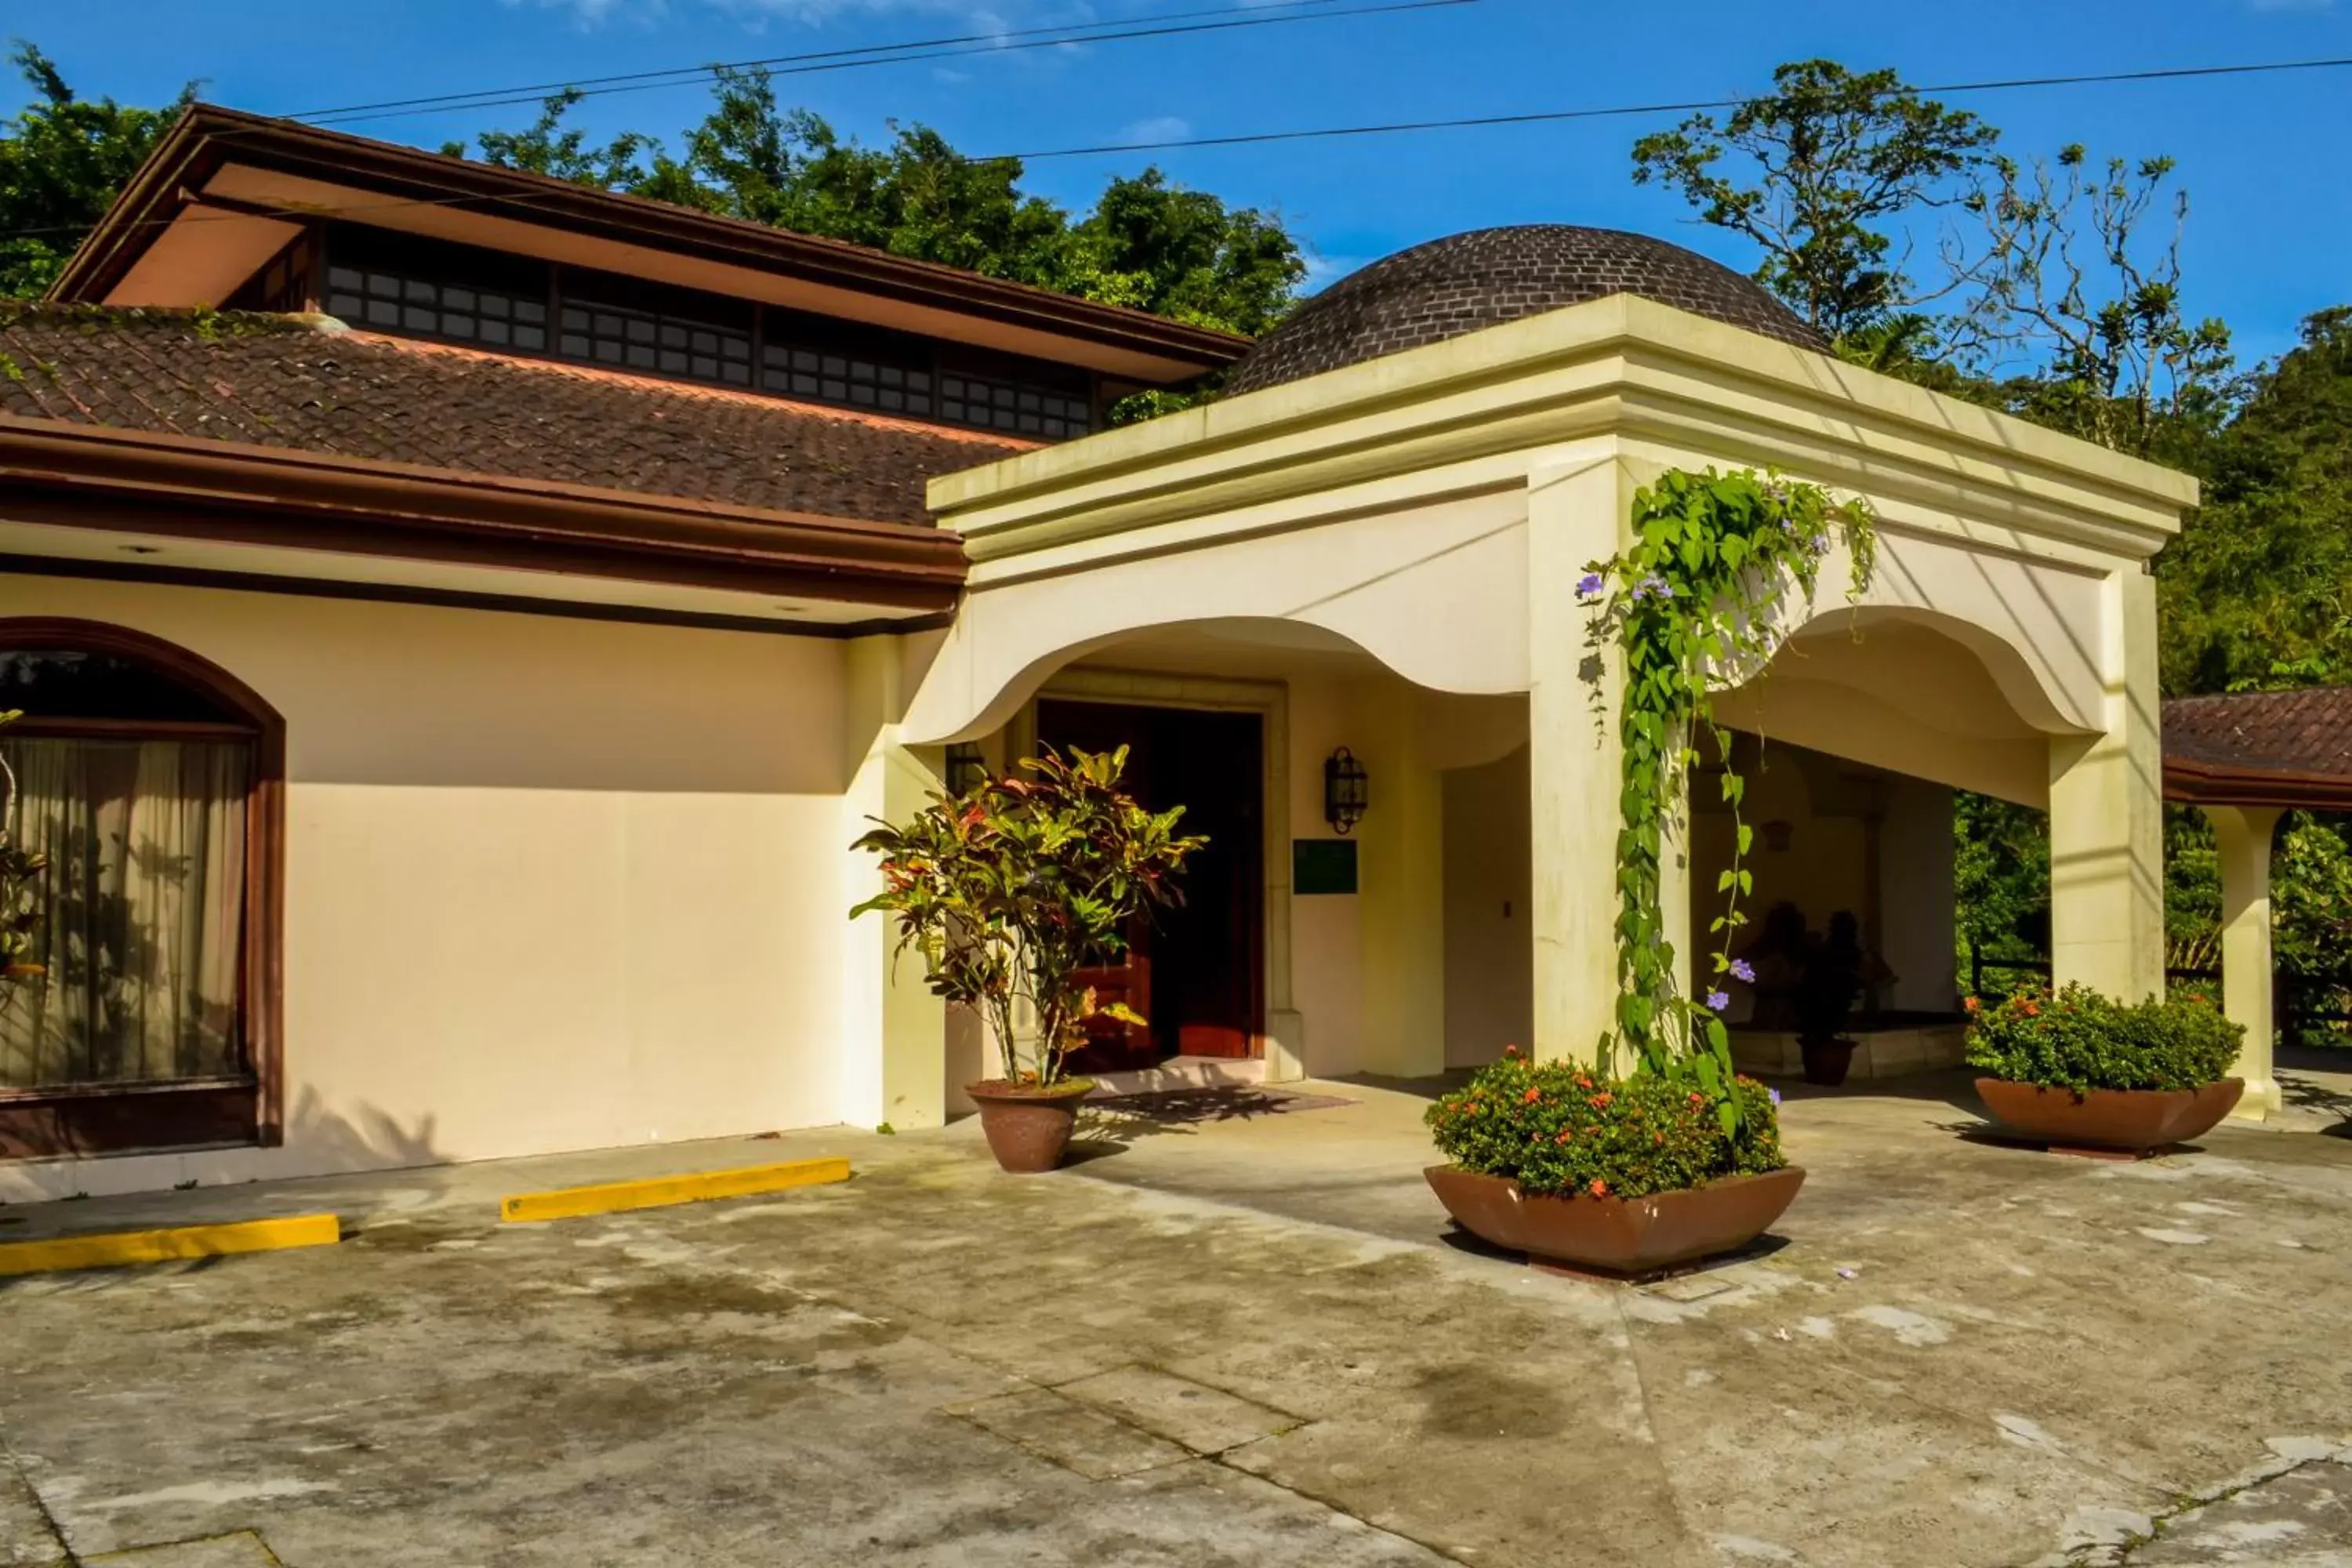 Area and facilities, Property Building in El Tucano Resort & Thermal Spa